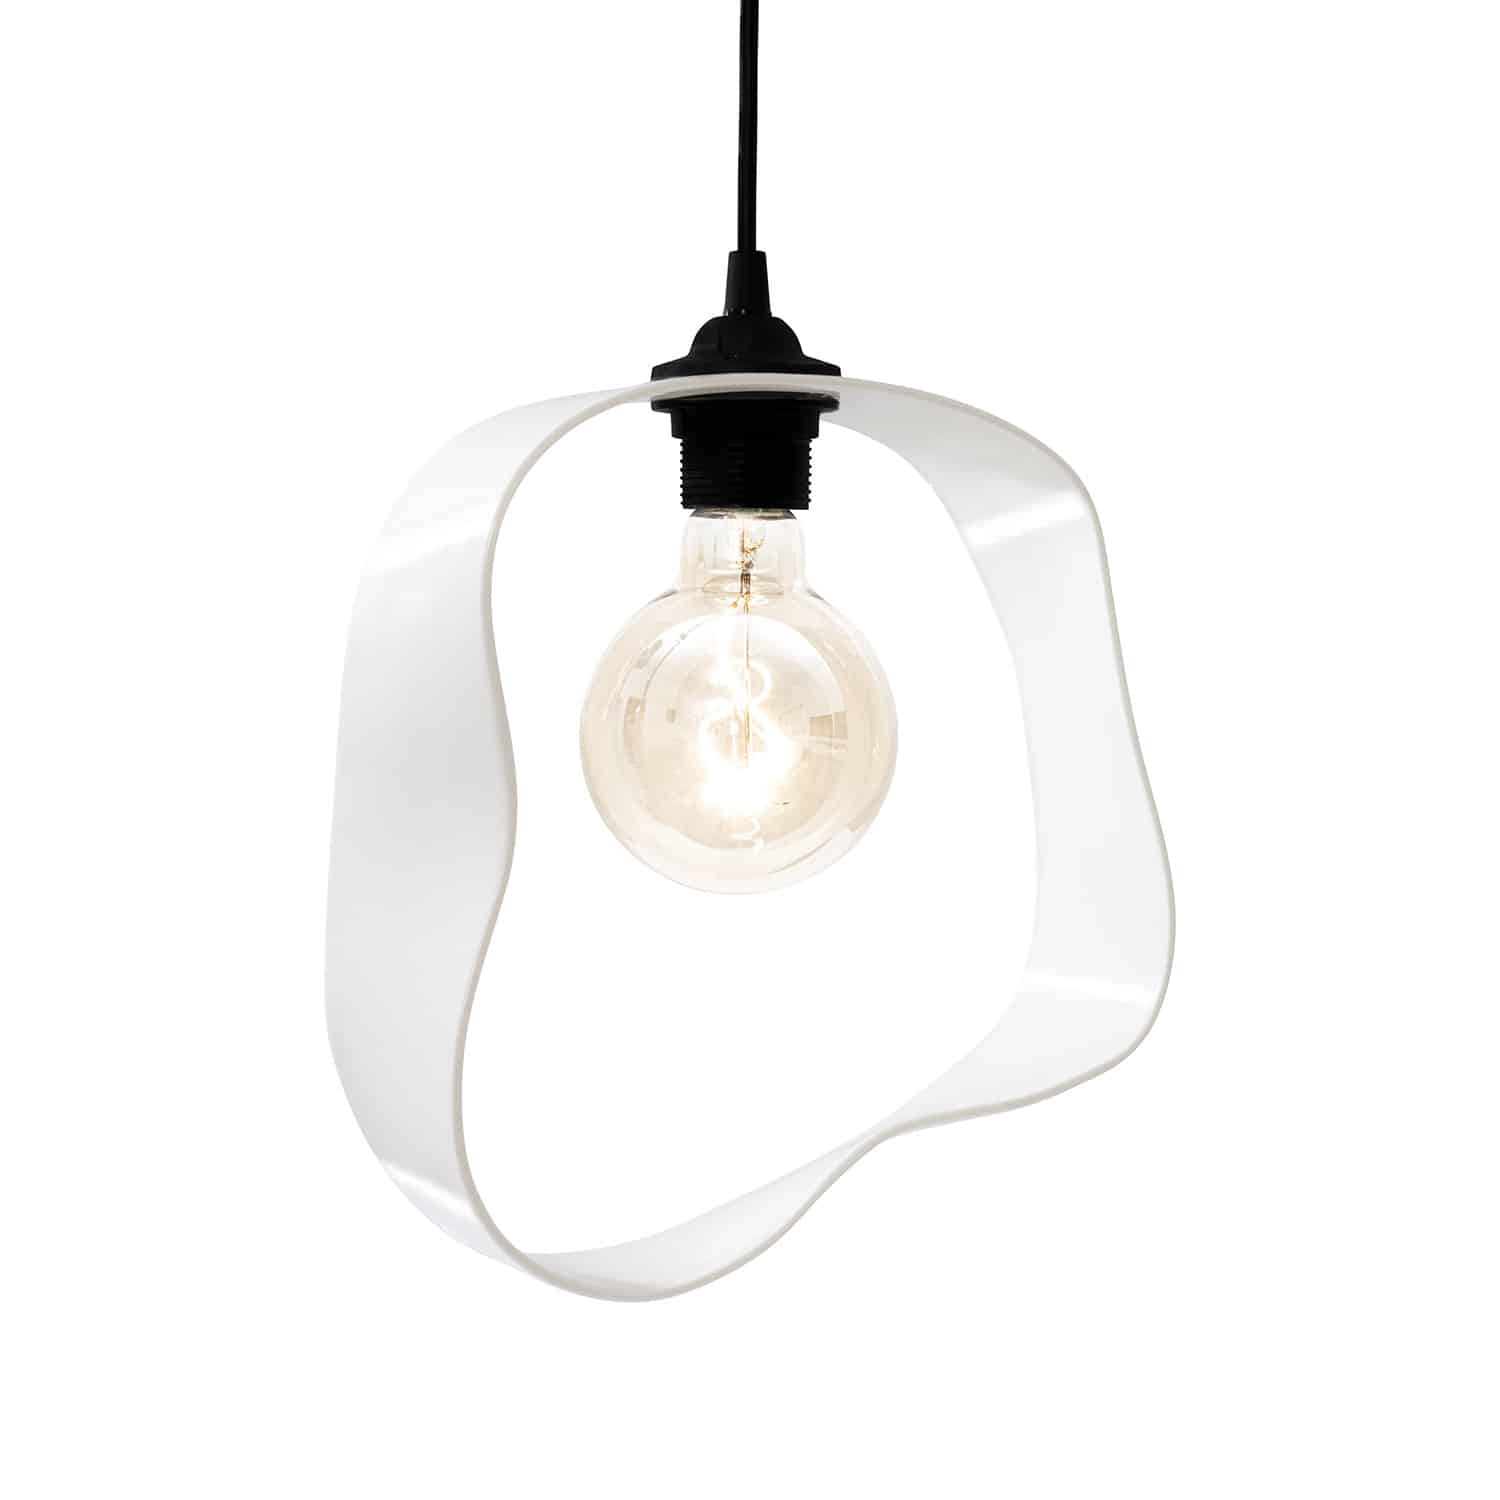 Designlampe Pendelleuchte Deckenlampe weißes Porzellan handgemacht Unikat